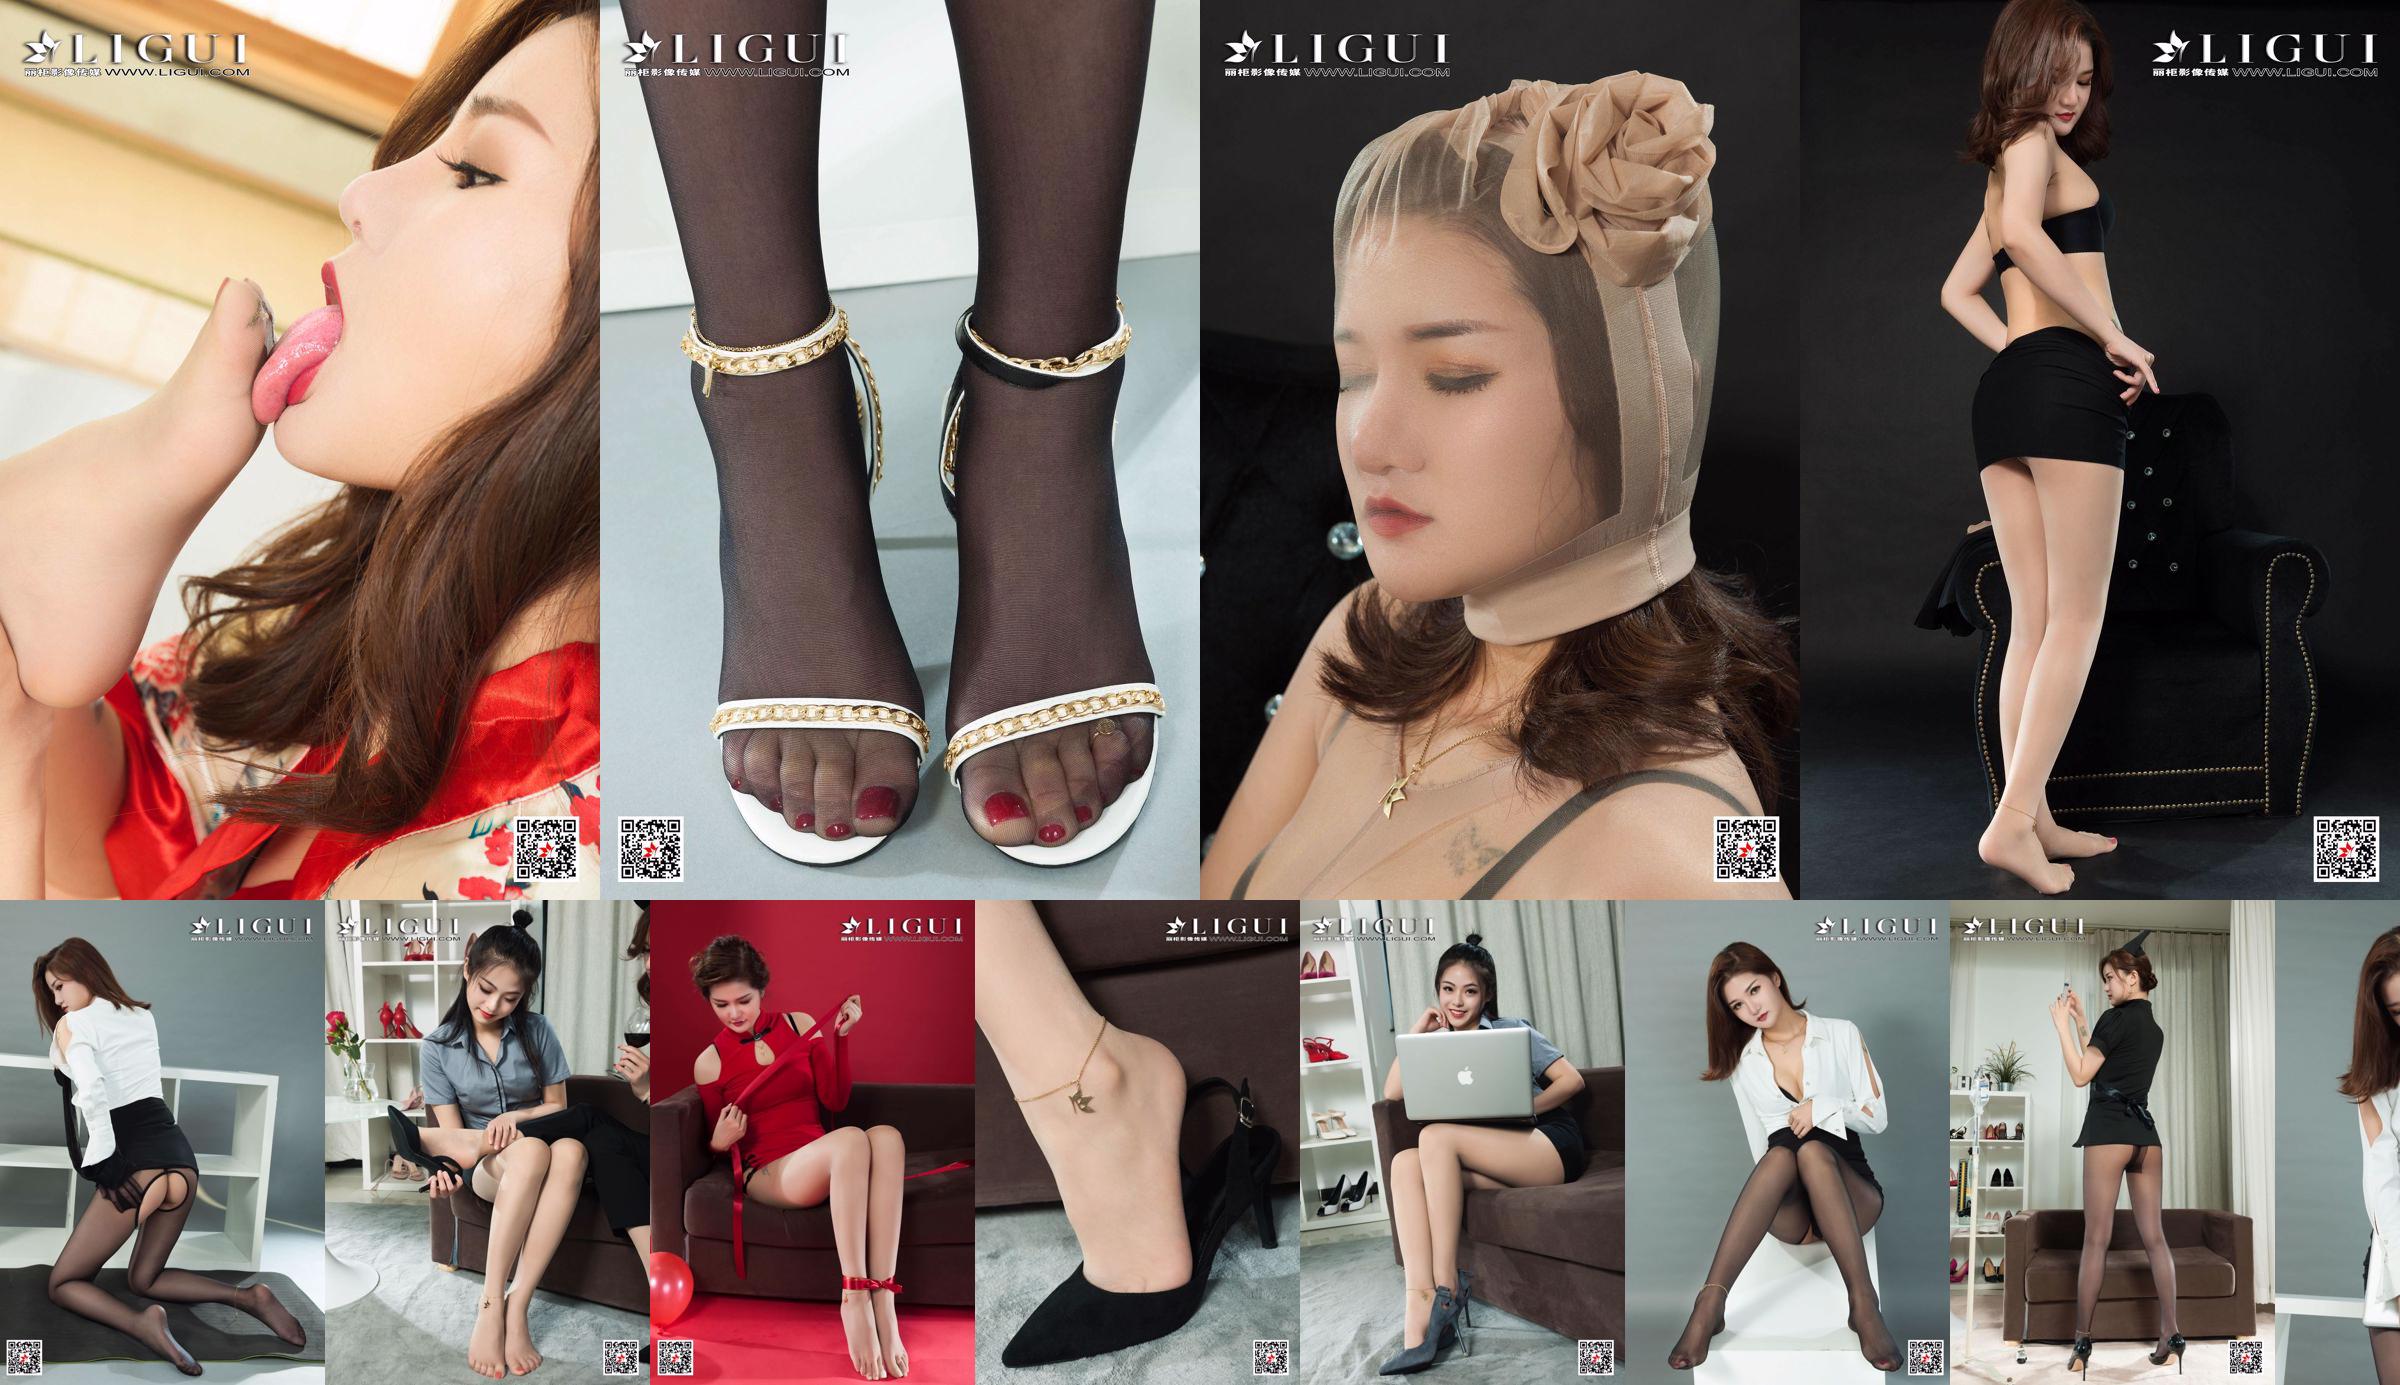 [丽柜 Ligui] Model Bunsho 《Kimono 丝foot》 No.23b6f5 Page 6